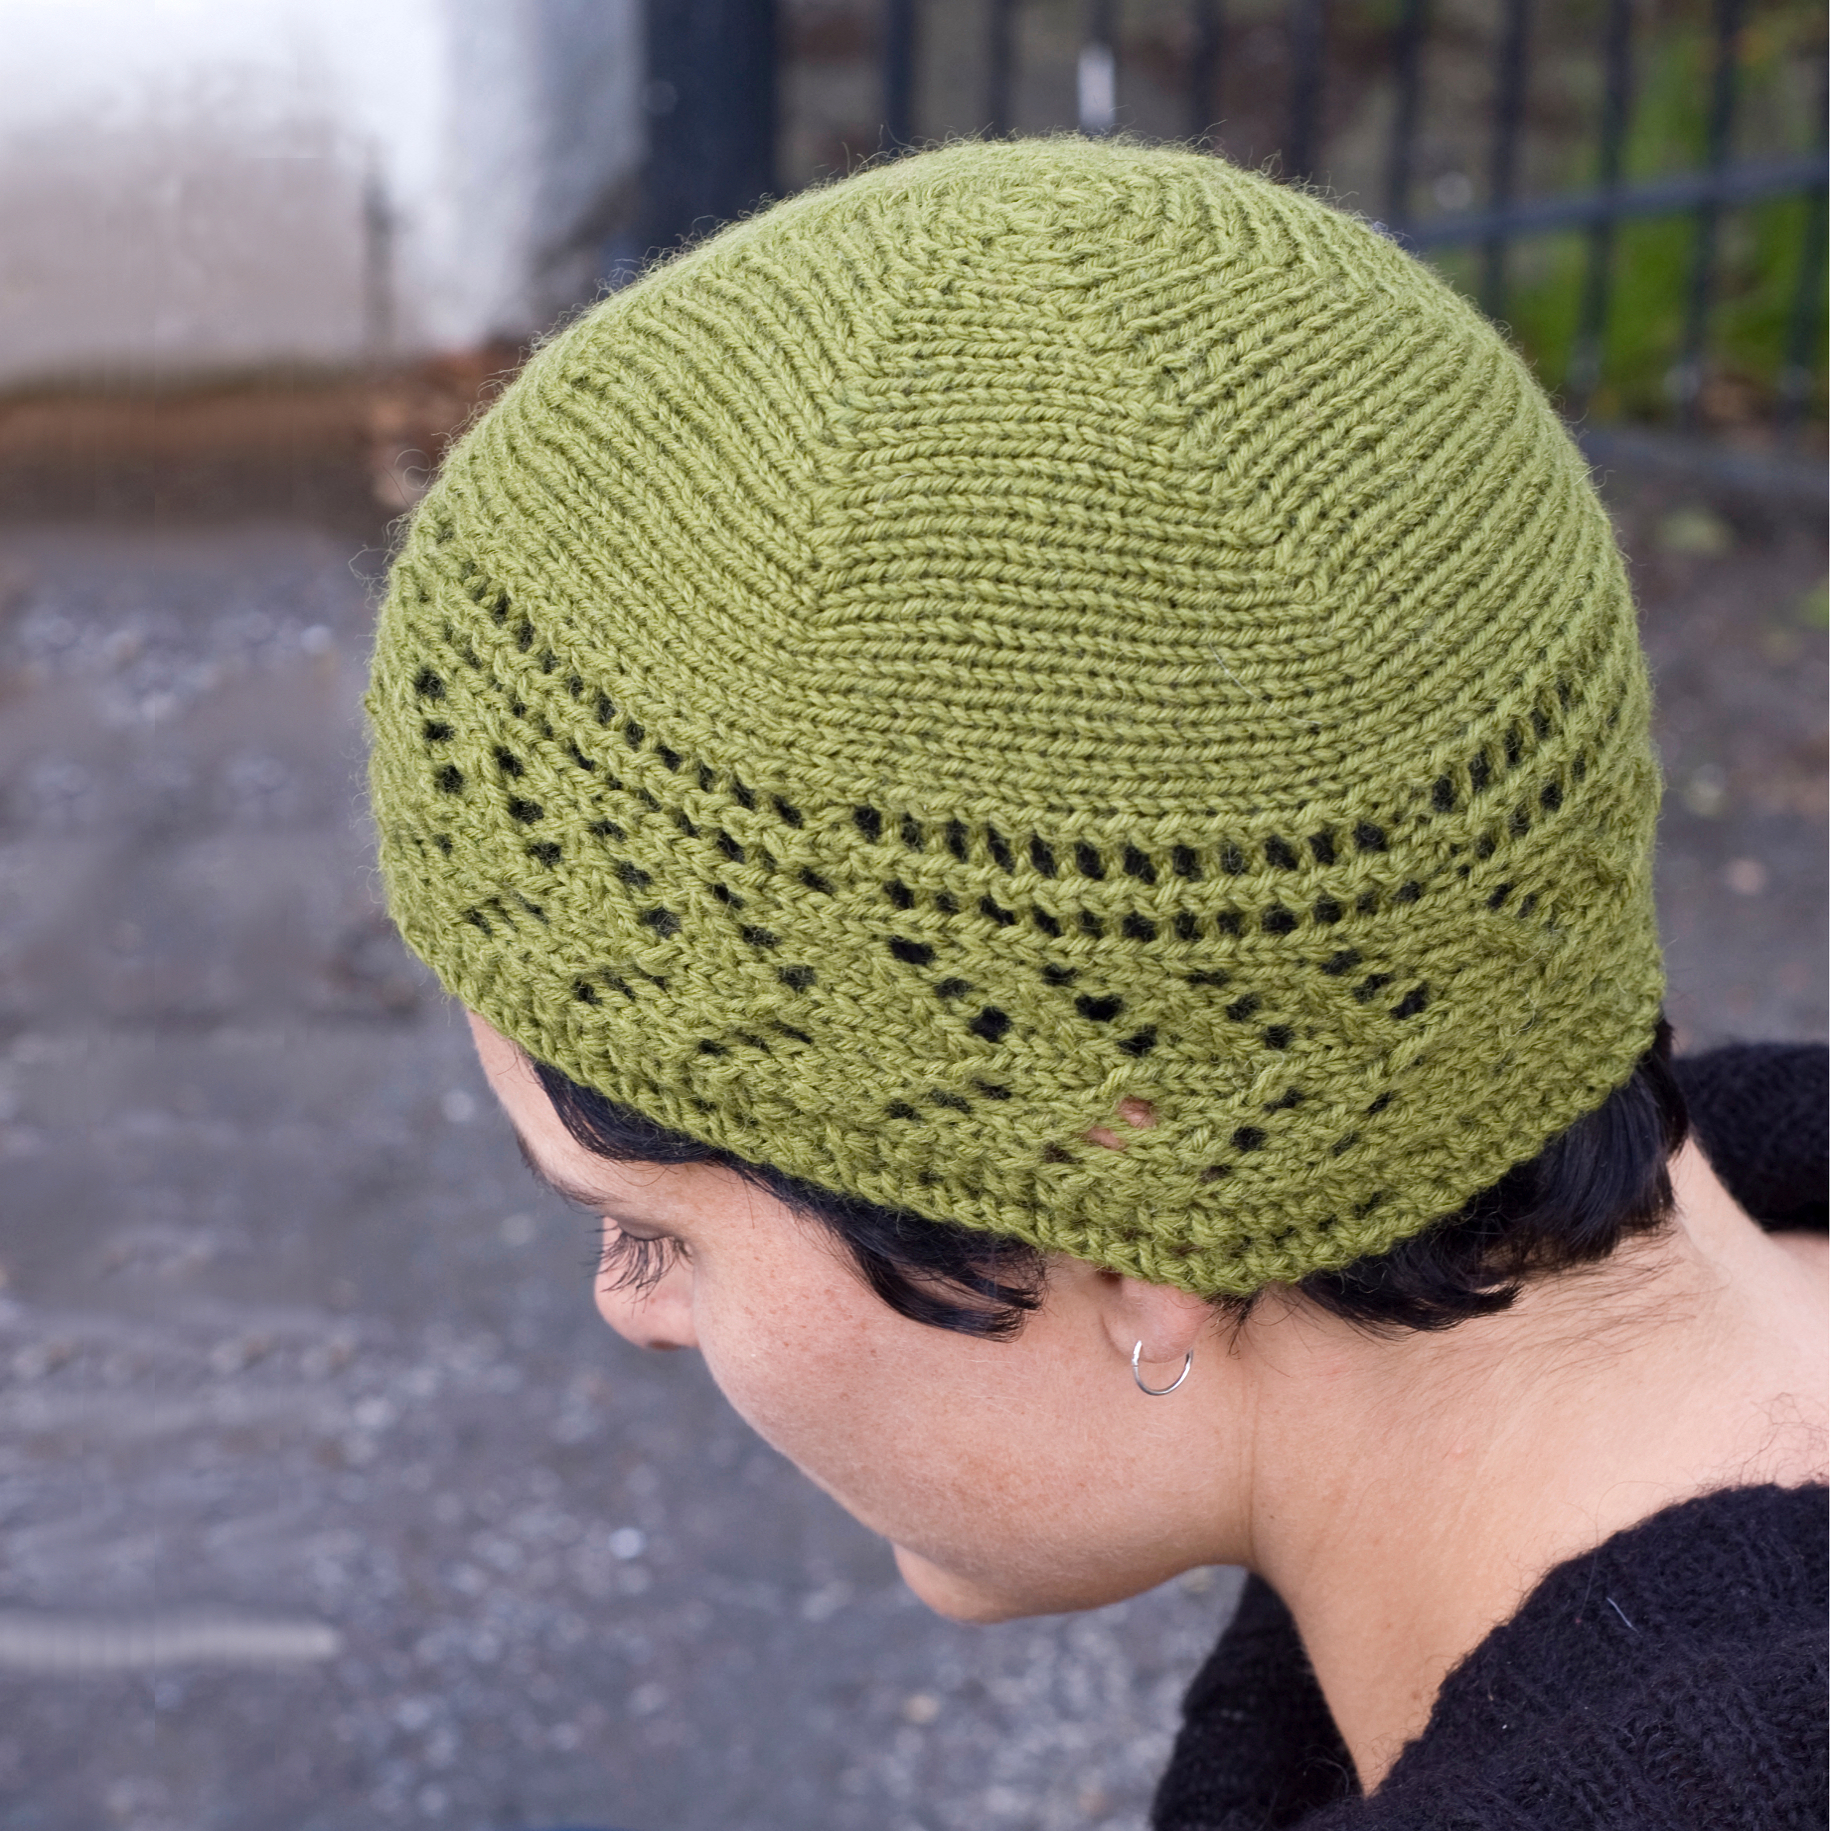 Dryad sideways knit lace Hat pattern